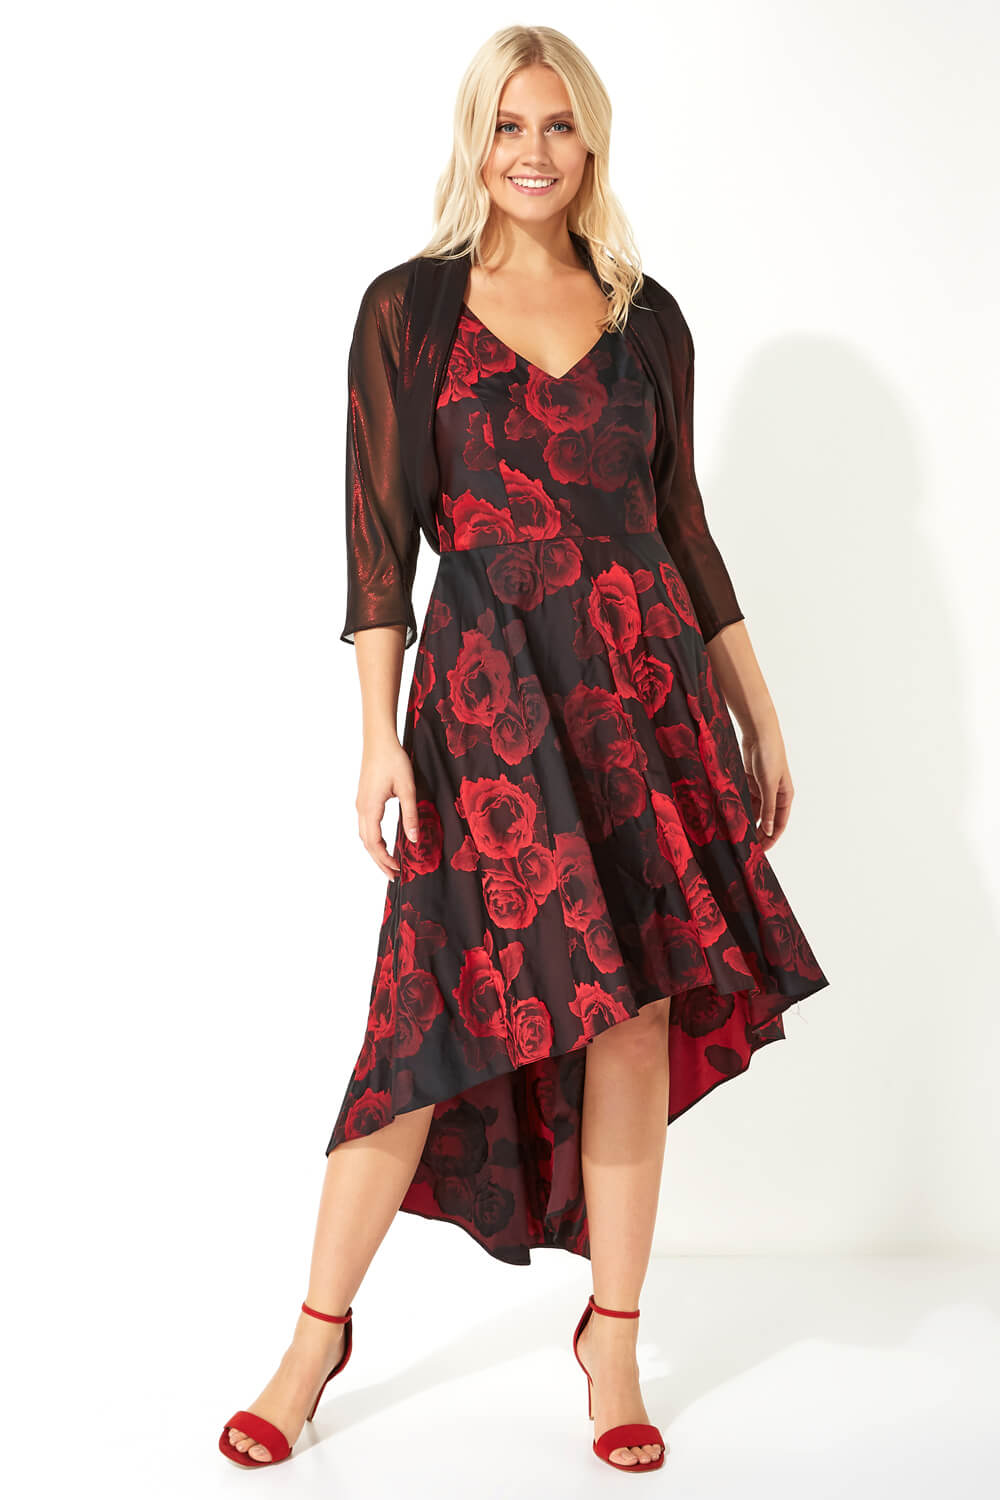 Red Rose Print Dipped Hem Dress, Image 3 of 4